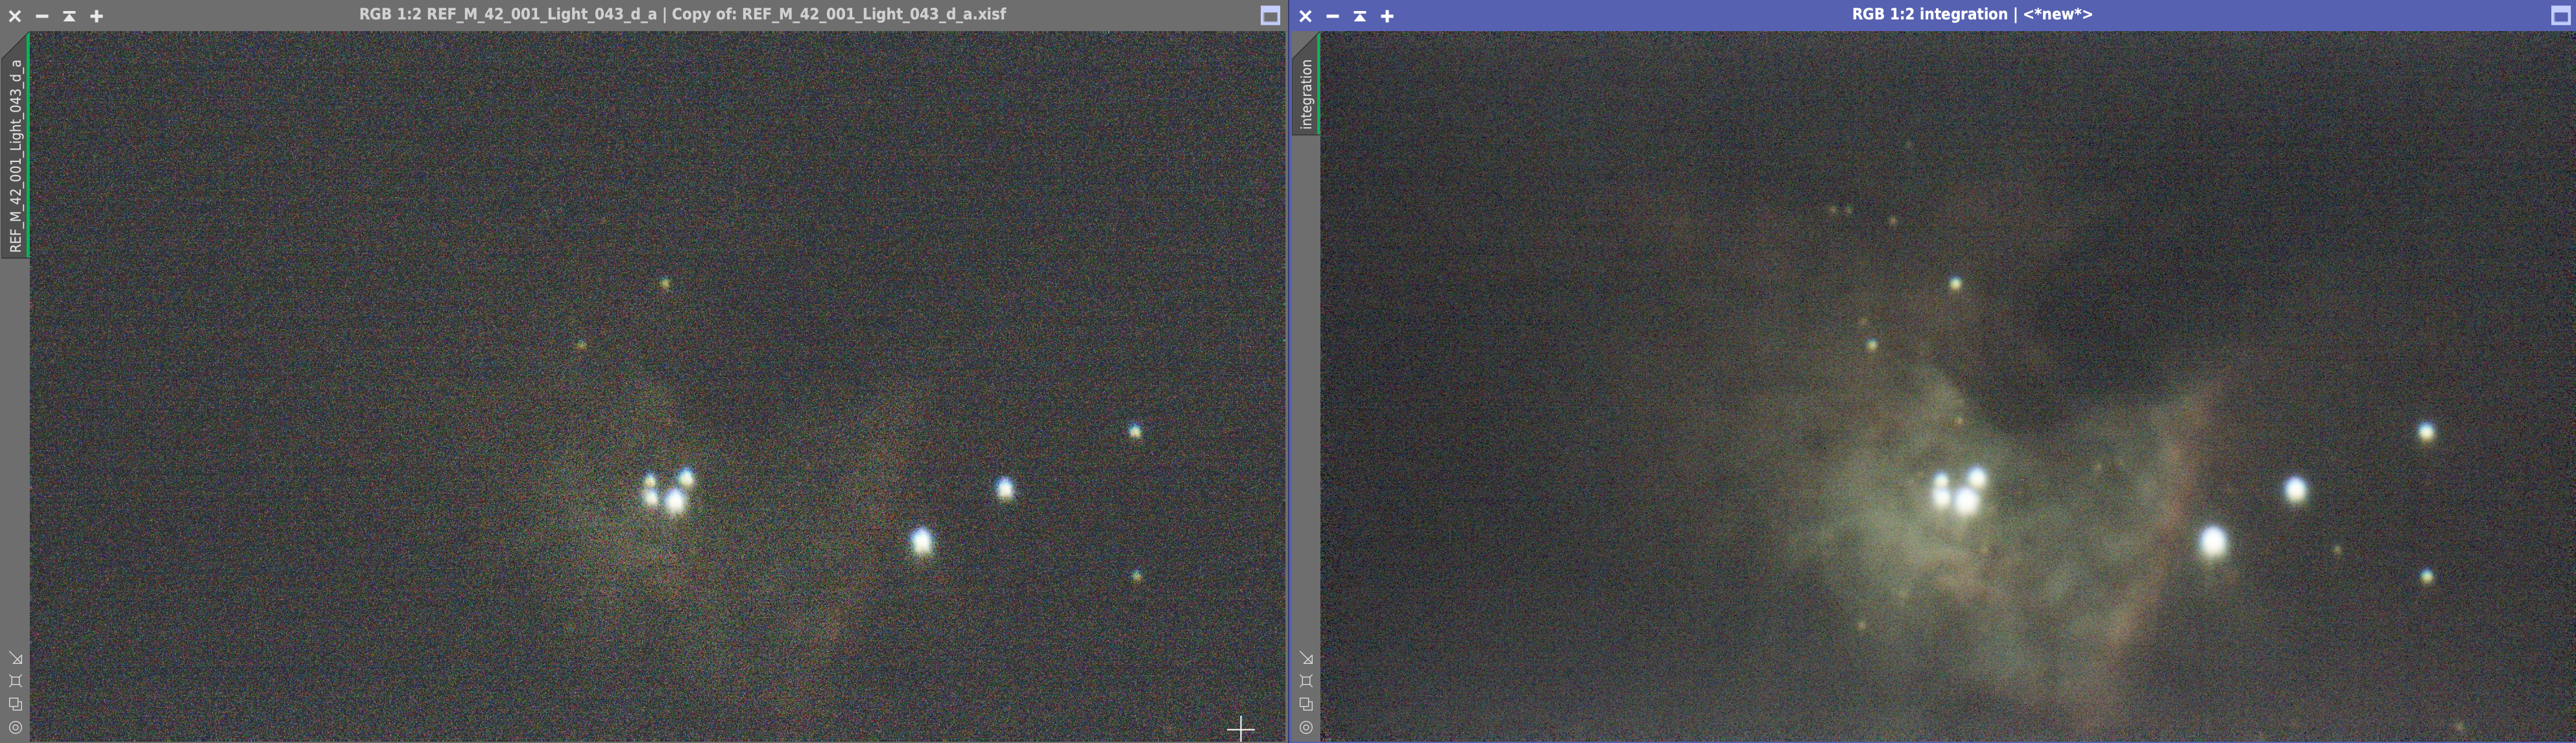 M42: Links Einzelaufnahme unbearbeitet, rechts 40 Einzelaufnahmen gestackt ohne weitere Nachbearbeitungen